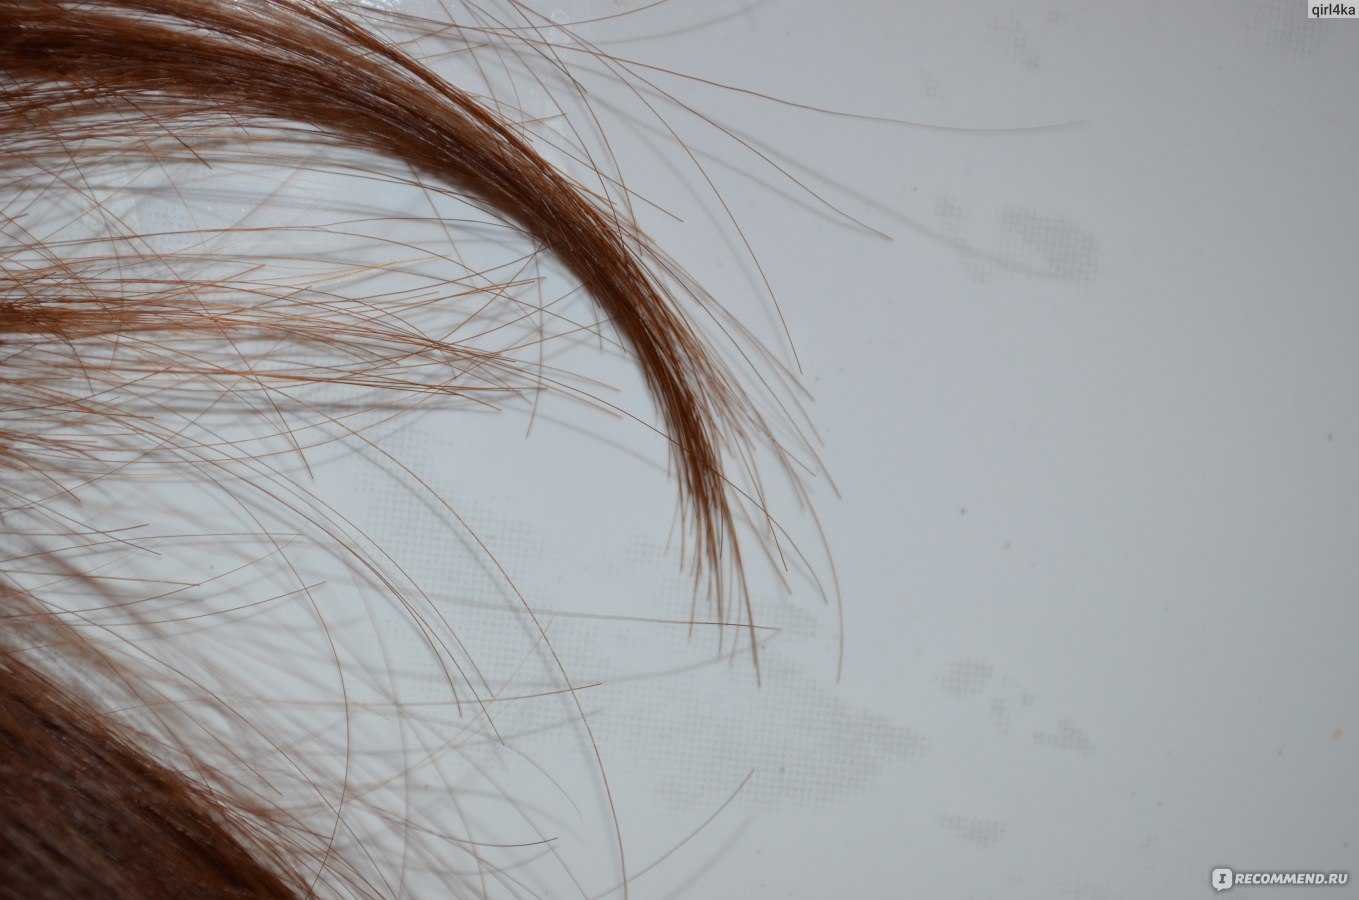 Вопрос дня: почему секутся волосы?